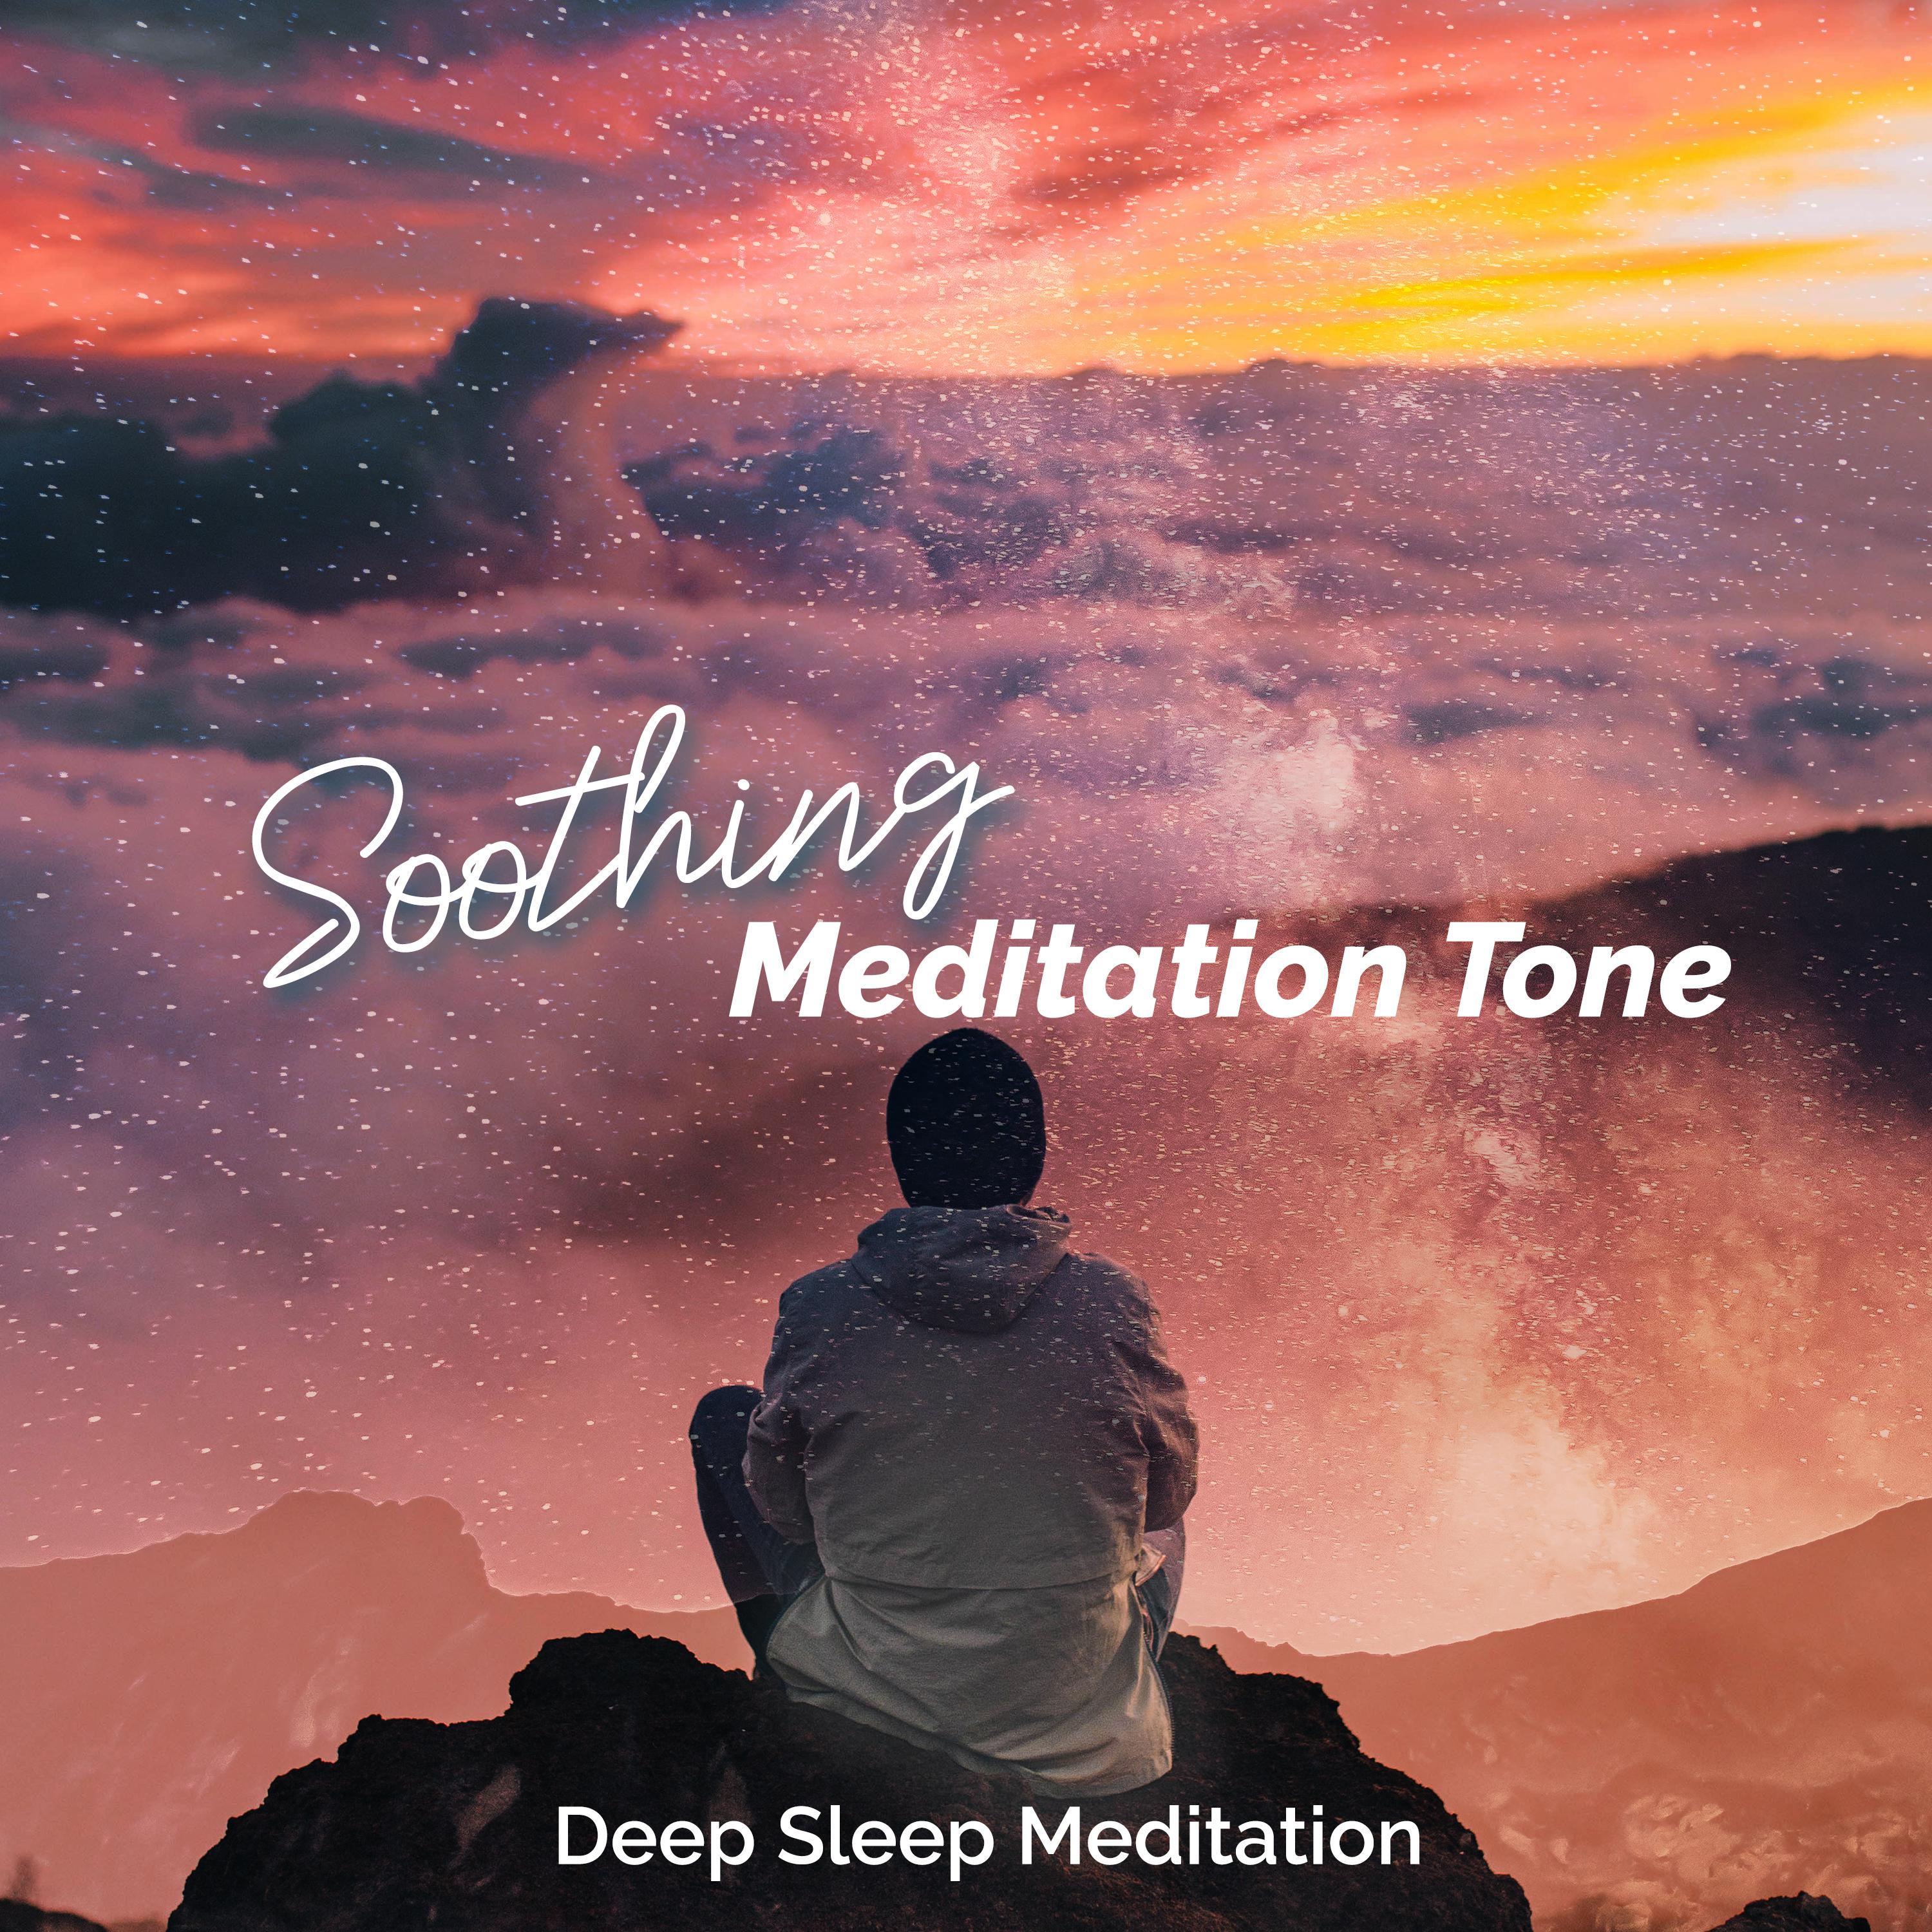 Soothing Meditation Tone